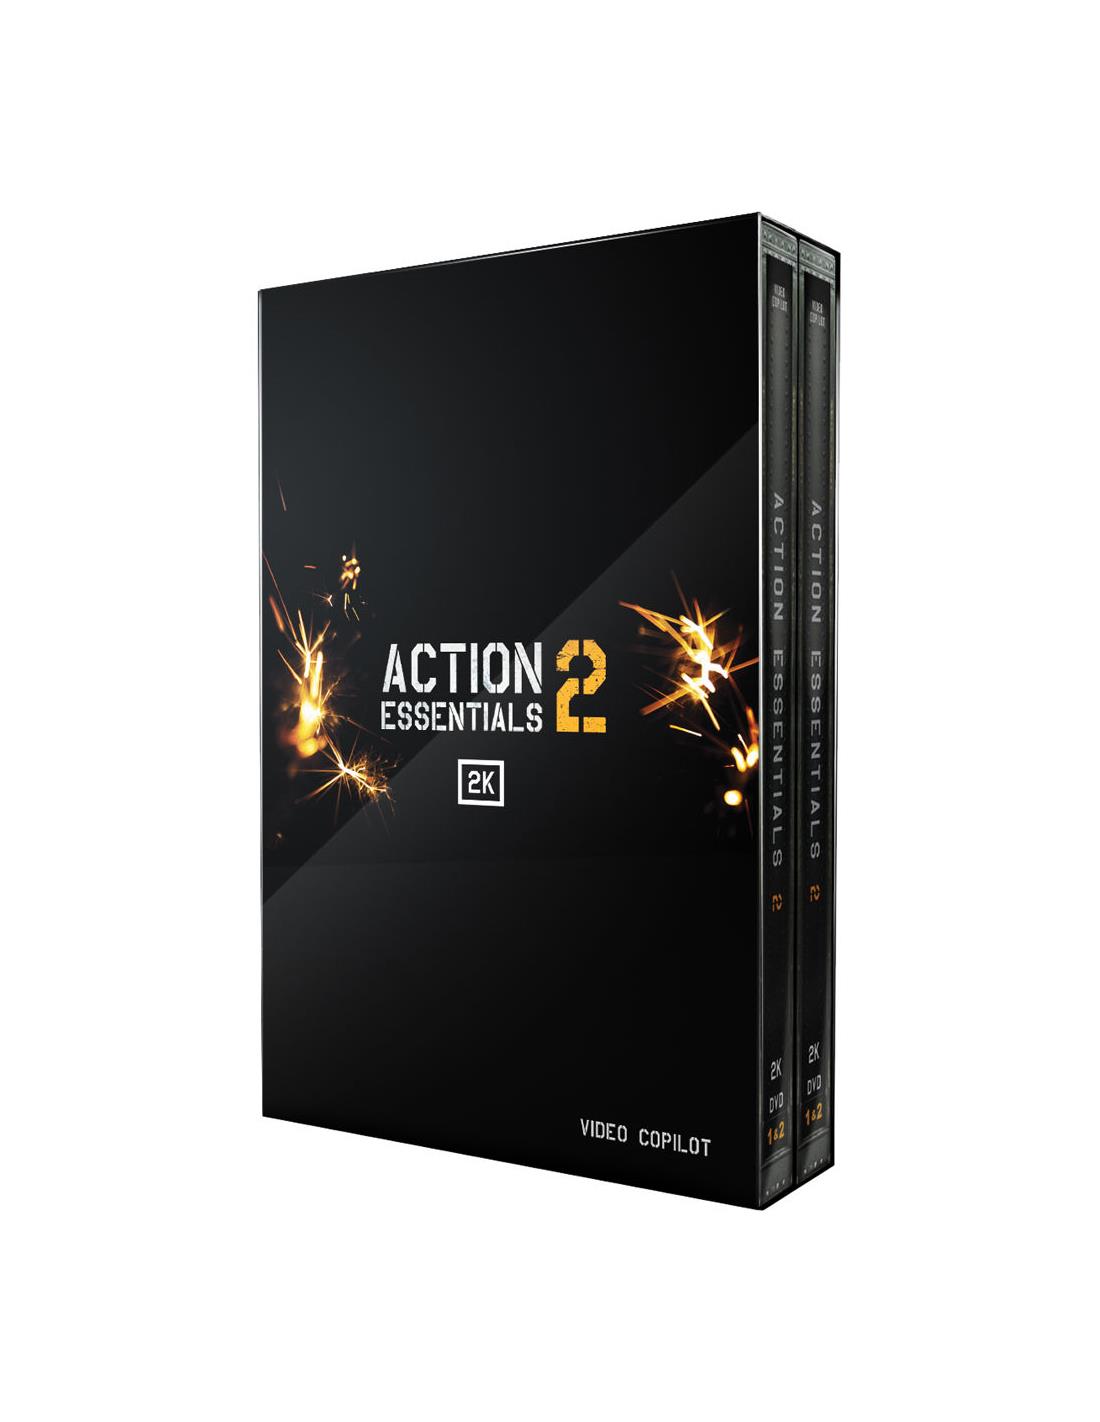 action essentials 2 free download windows